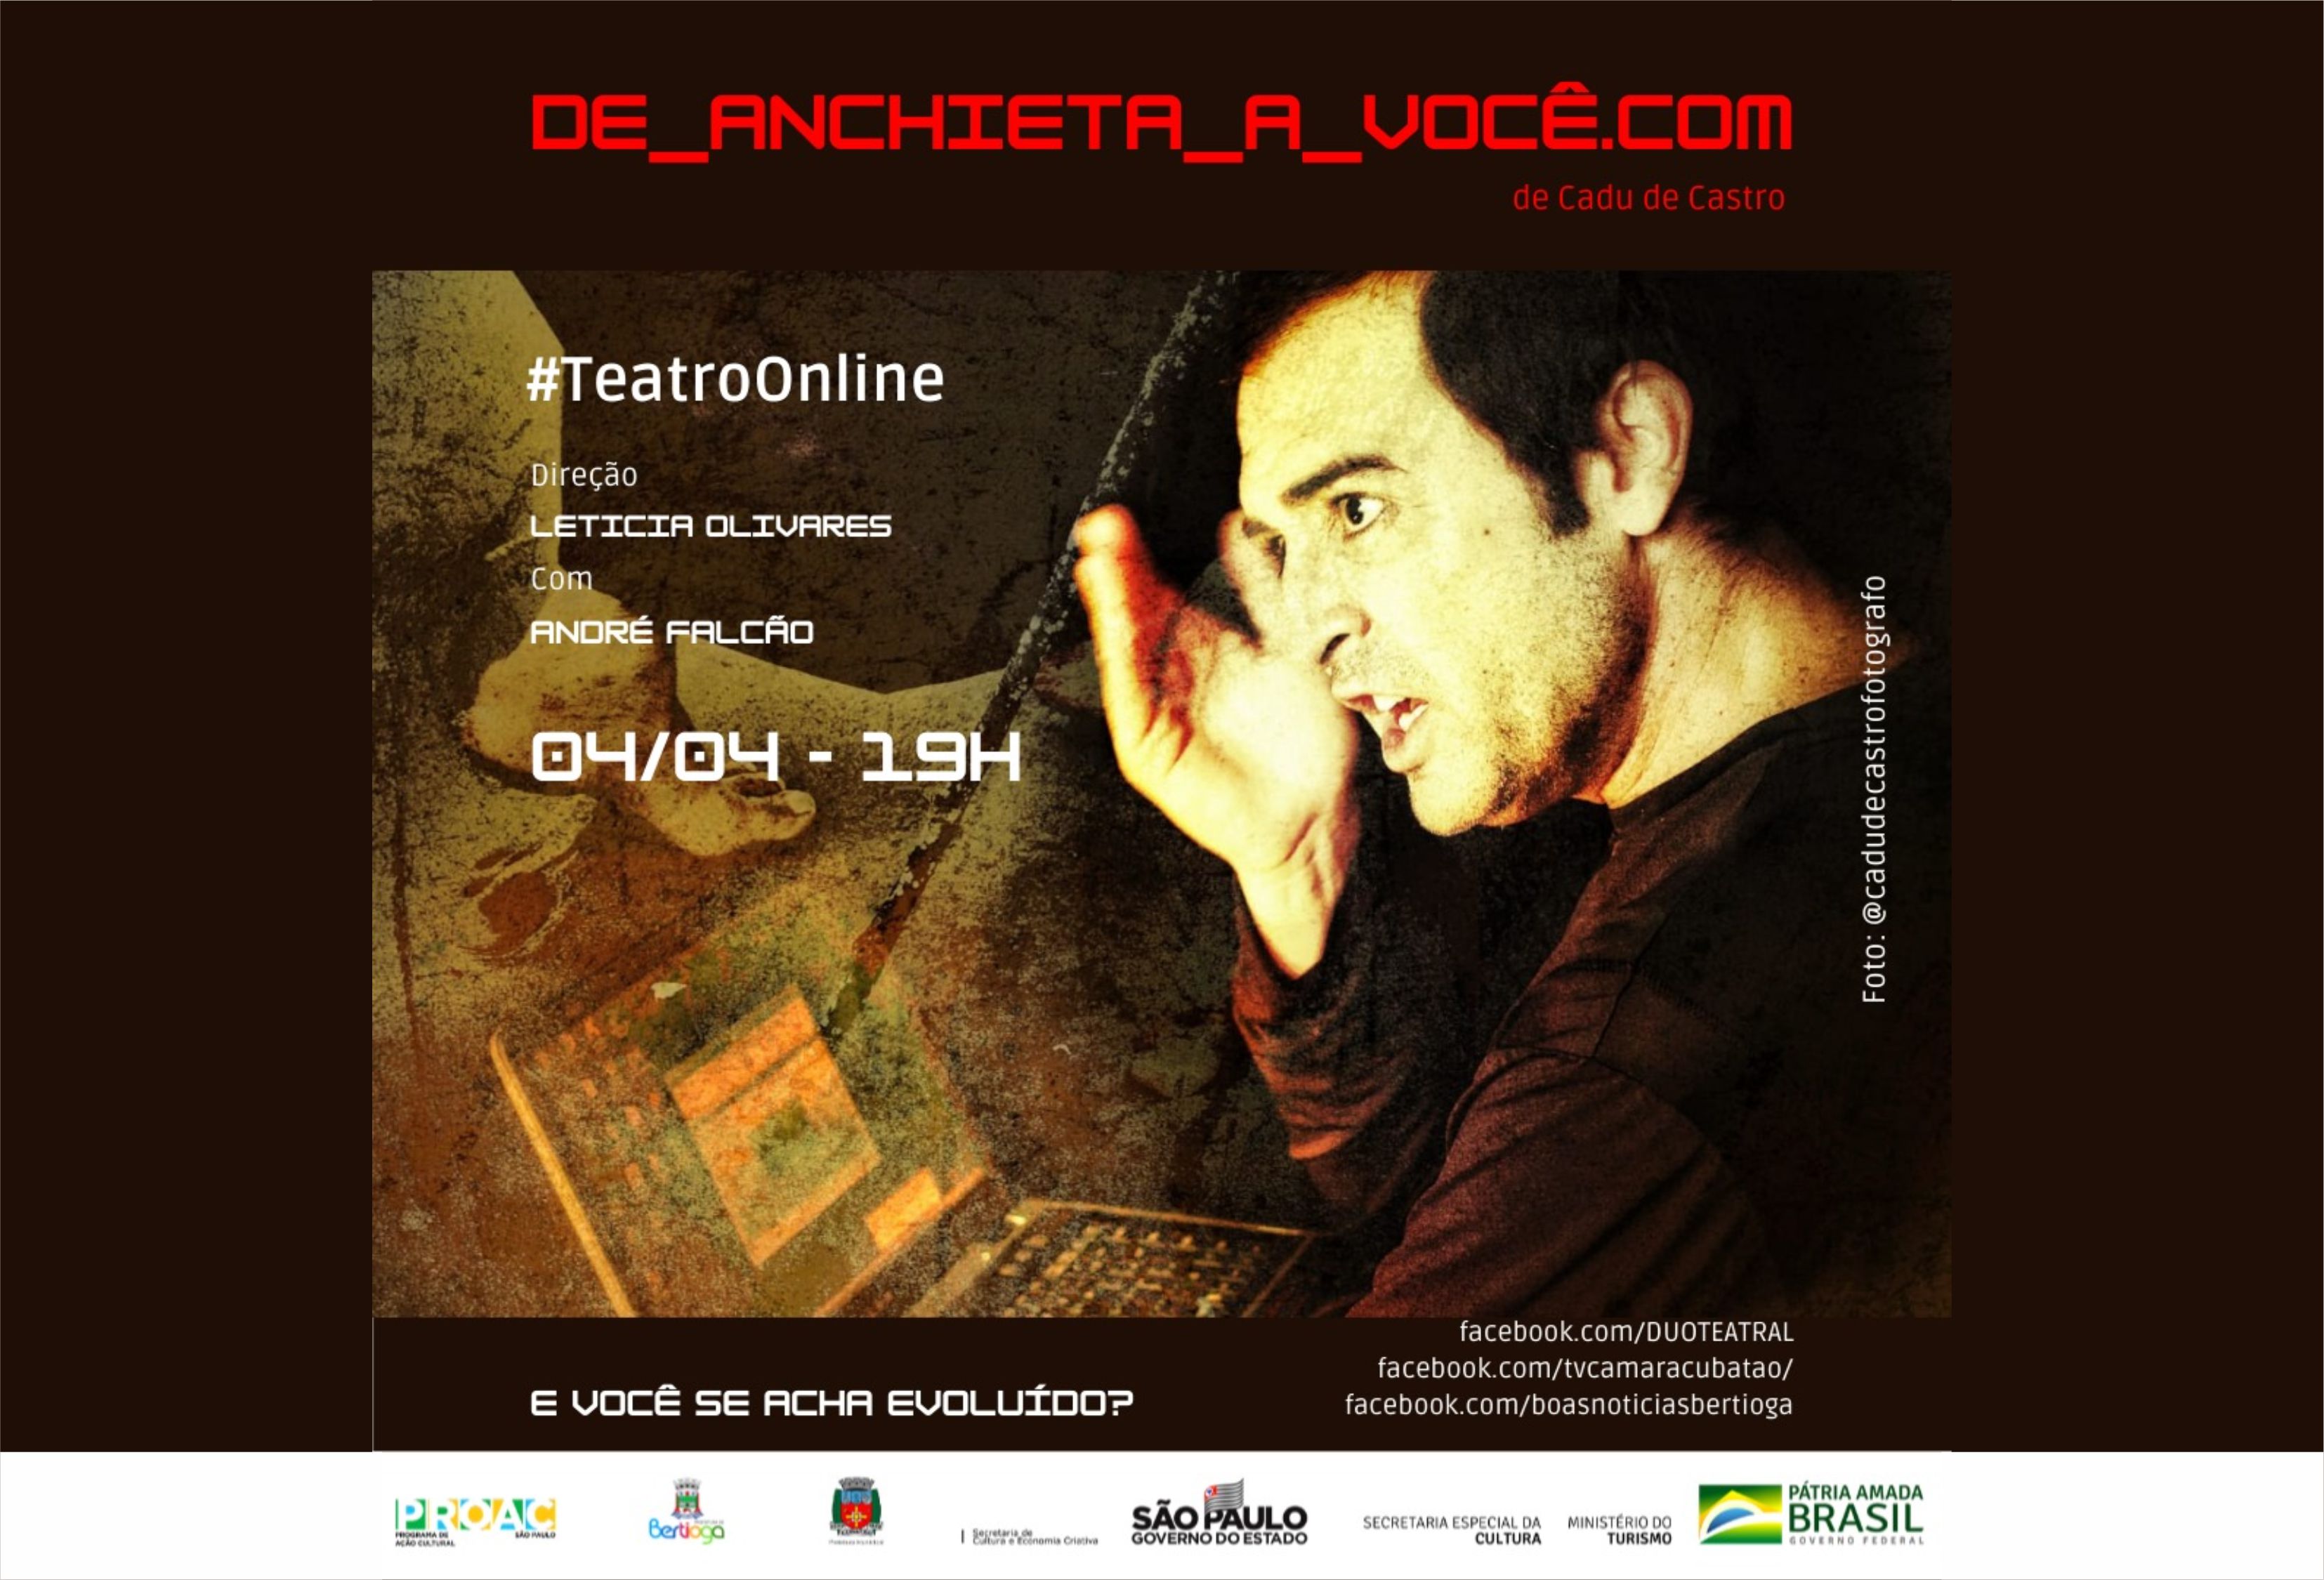 Bertioga apresenta neste domingo (04) a peça teatral "De Anchieta a você.com"